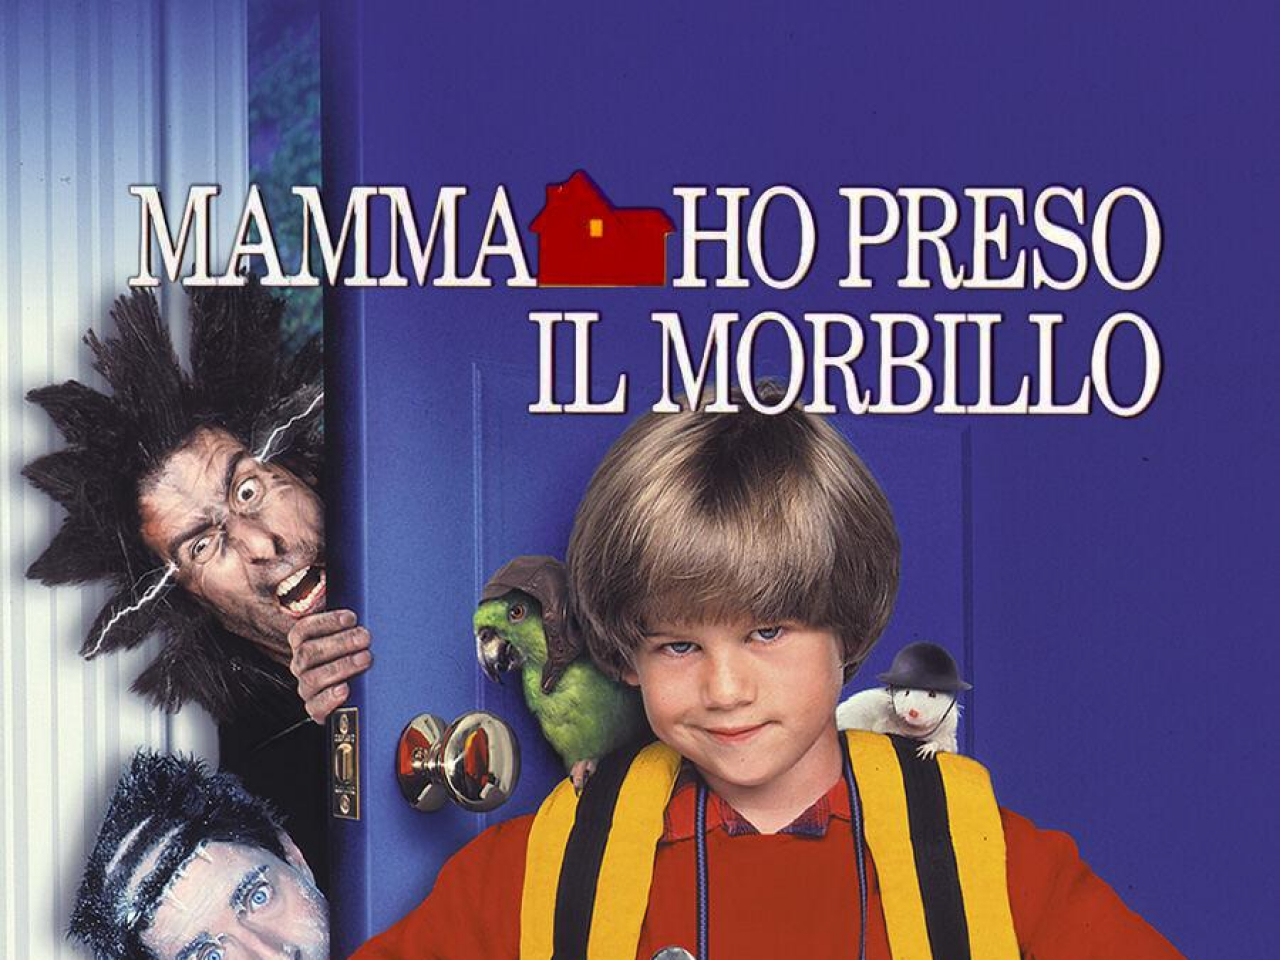 "Mamma ho preso il morbillo", alle 21.20 su Italia 1: ecco la trama del film del 1997